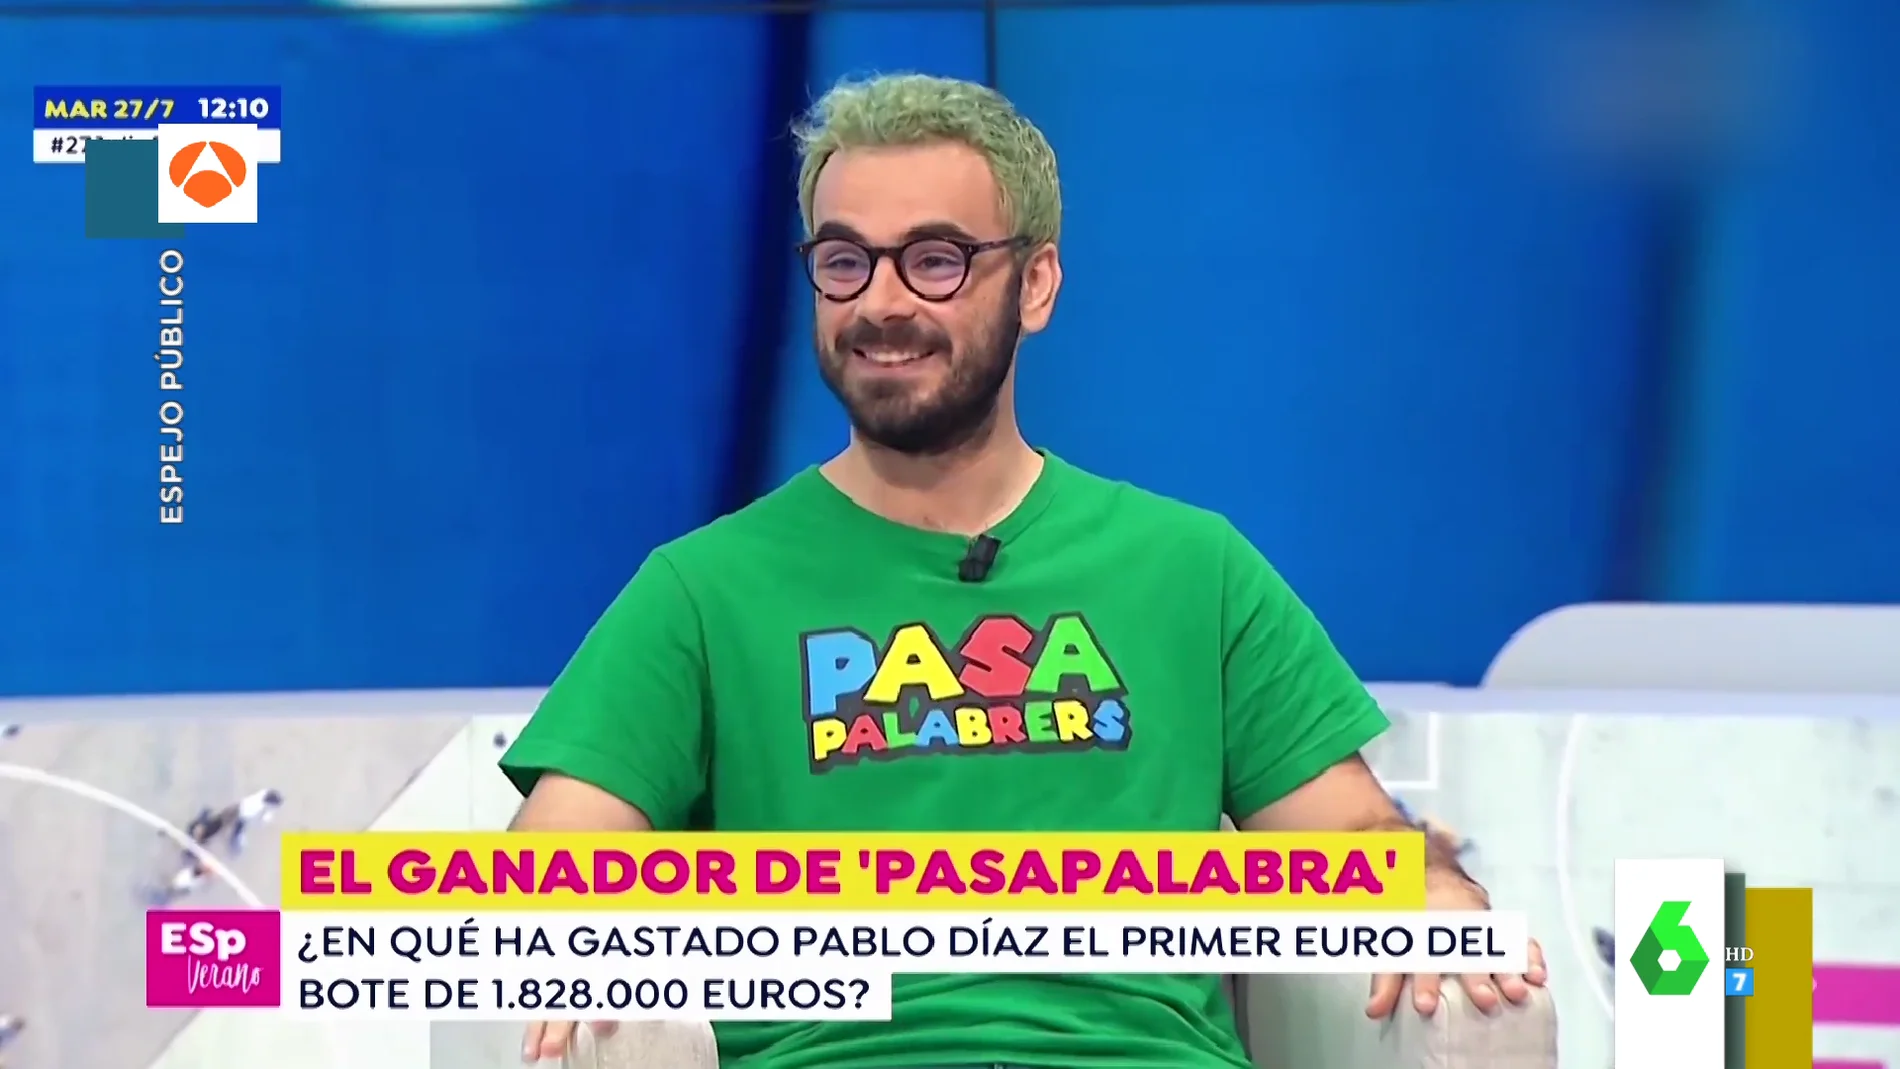 El increíble cambio de look de Pablo Díaz tras ganar Pasapalabra: "Fue una apuesta por llevarme el bote" 